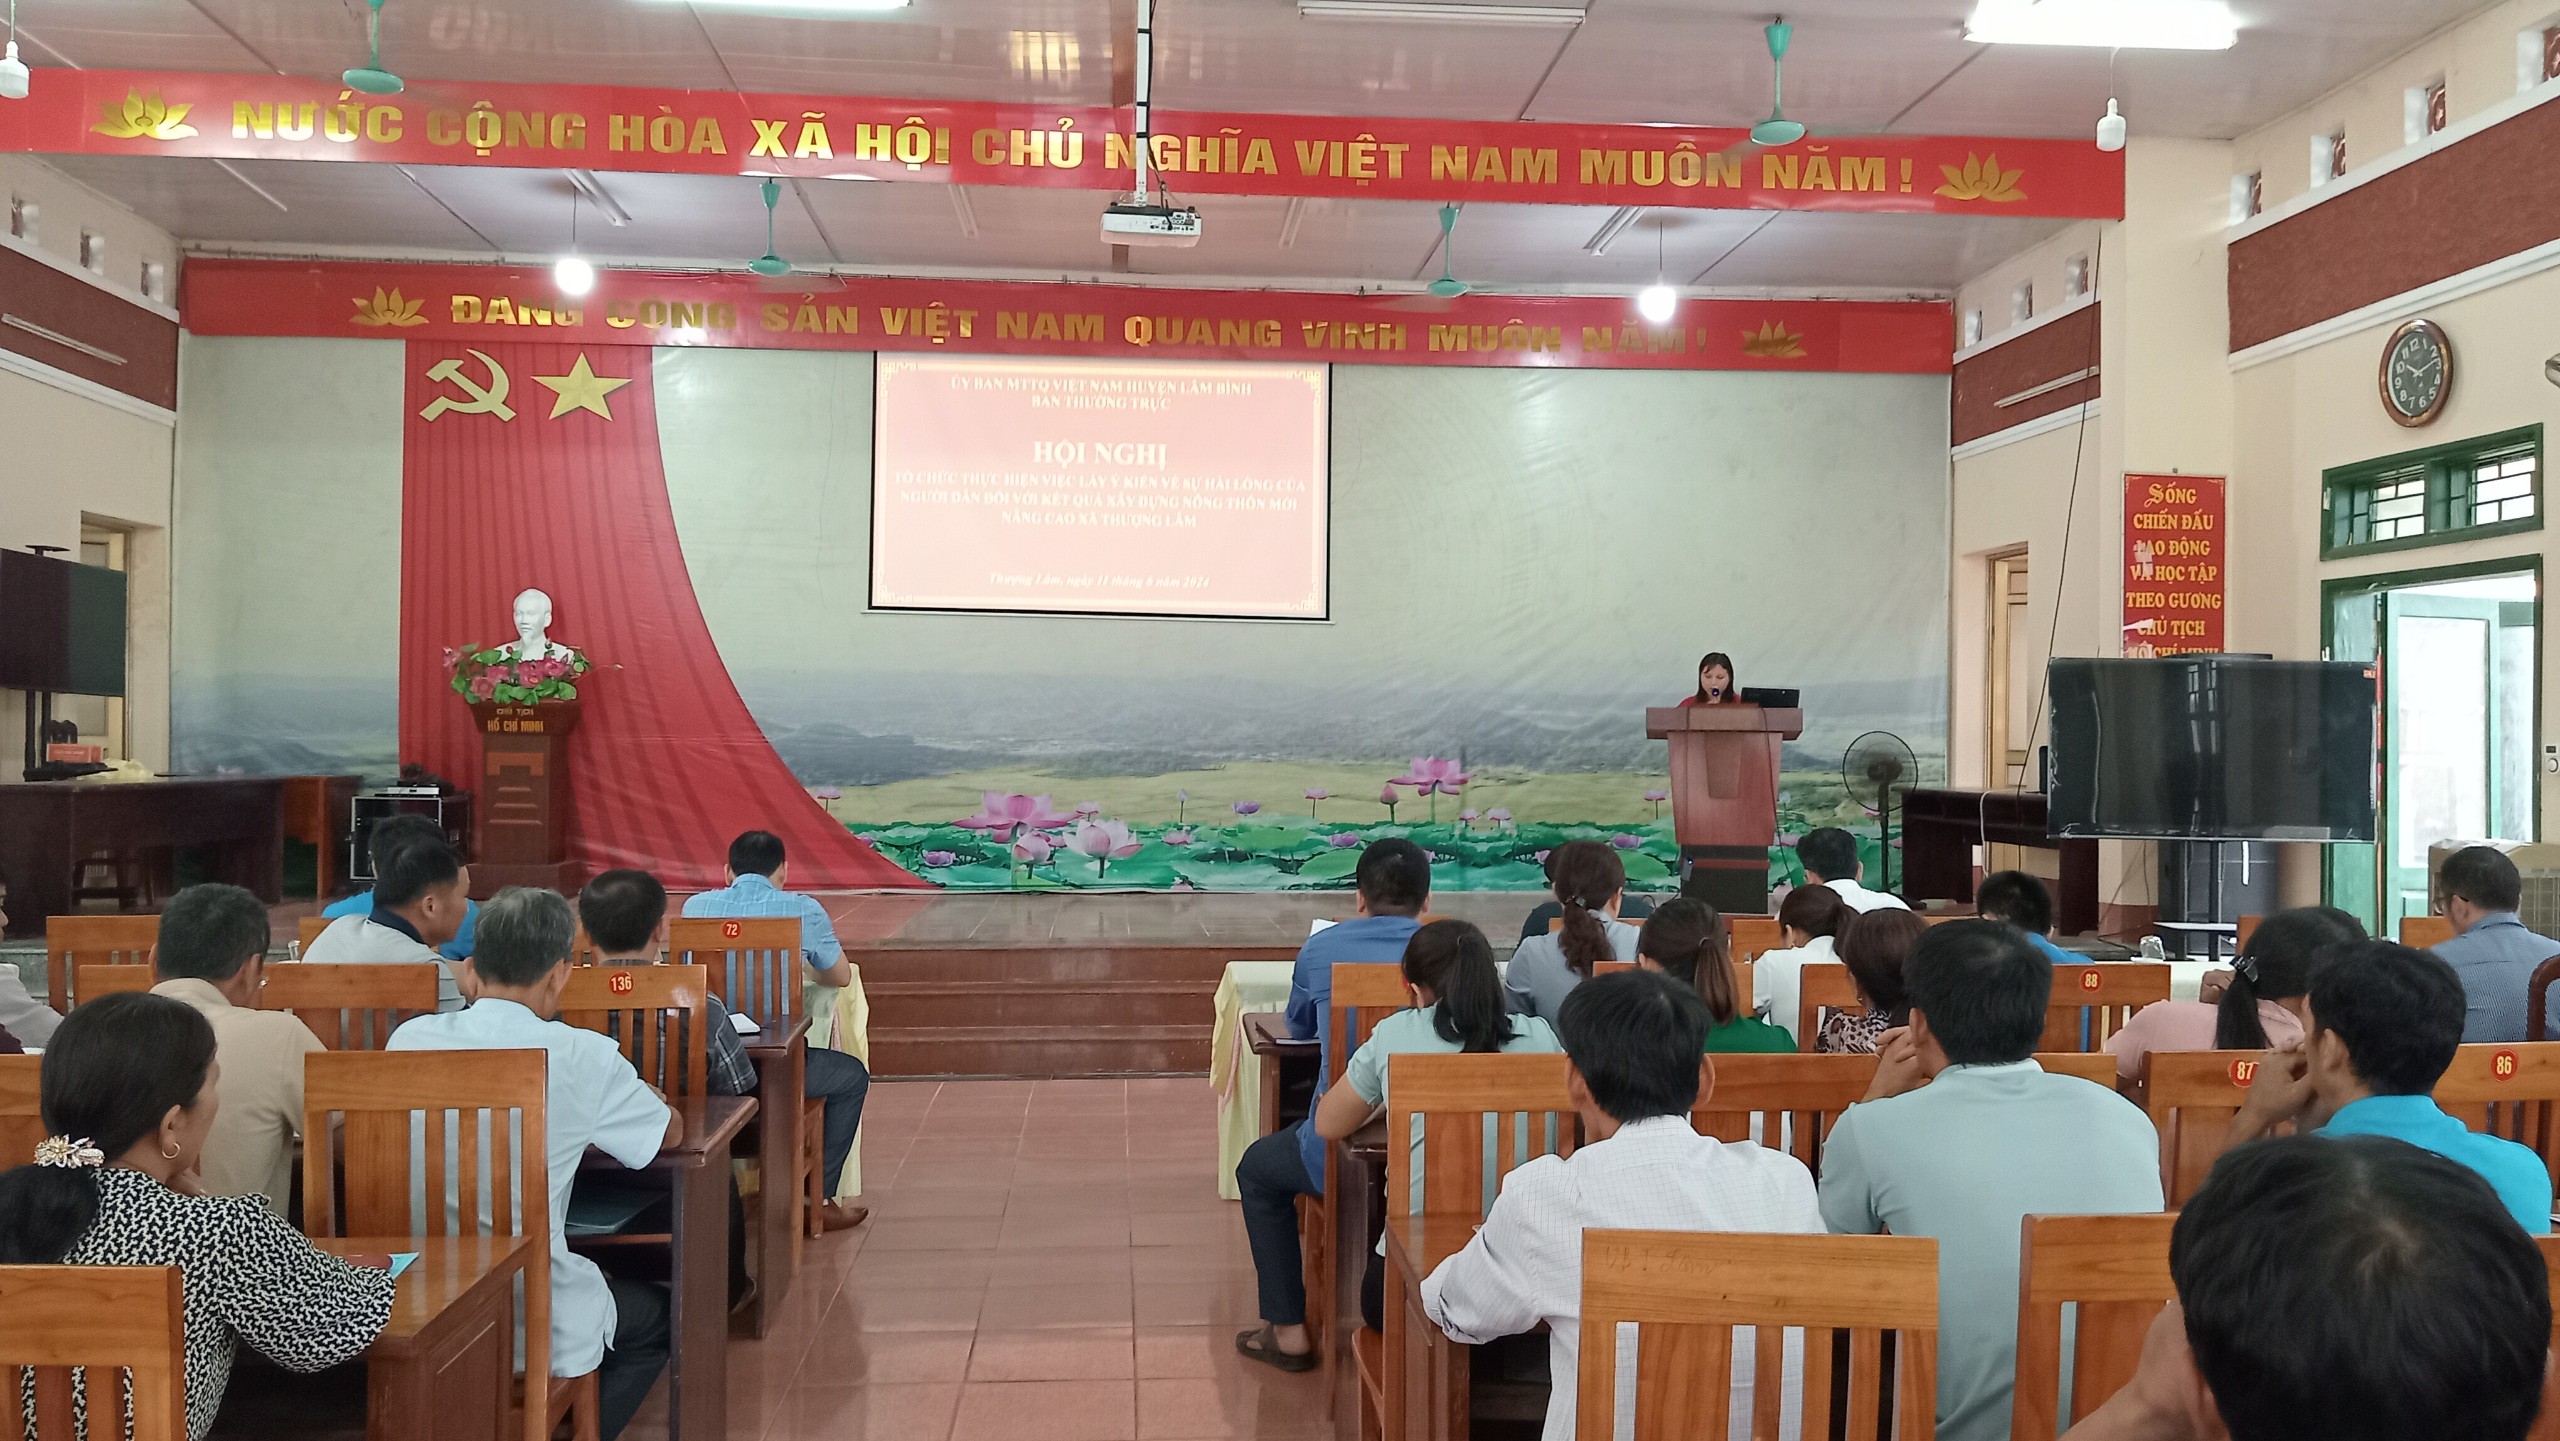 Uỷ ban MTTQ huyện Lâm Bình phối hợp tổ chức Hội nghị triển khai lấy ý kiến về sự hài lòng của người dân về xây dựng nông thôn mới nâng cao